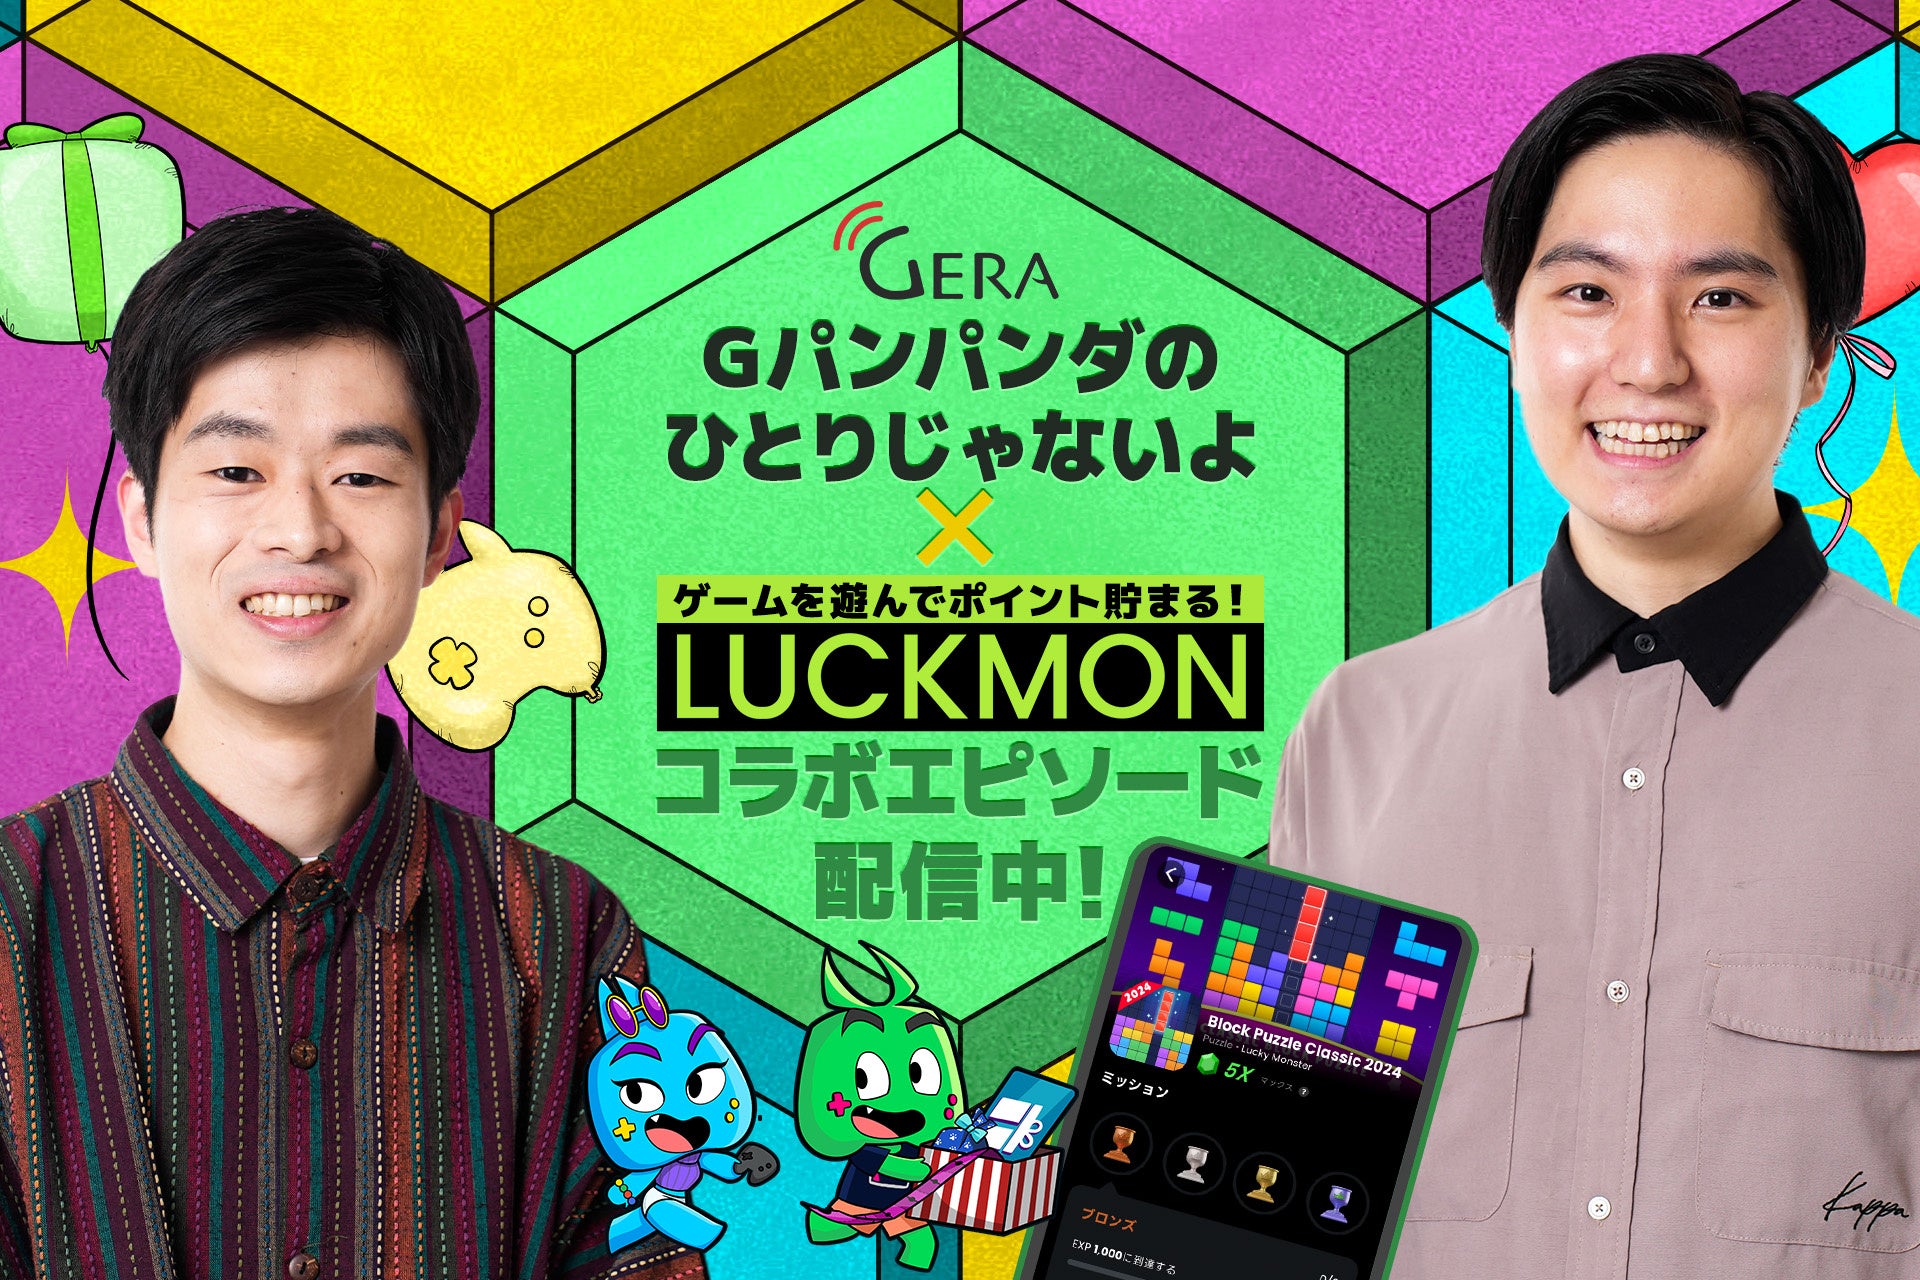 ファンコミュニケーションズ・グローバル、モバイルゲームユーザー向けプラットフォーム「Luckmon」にて、お笑いラジオアプリGERAで配信中の「Gパンパンダのひとりじゃないよ」とコラボを実施